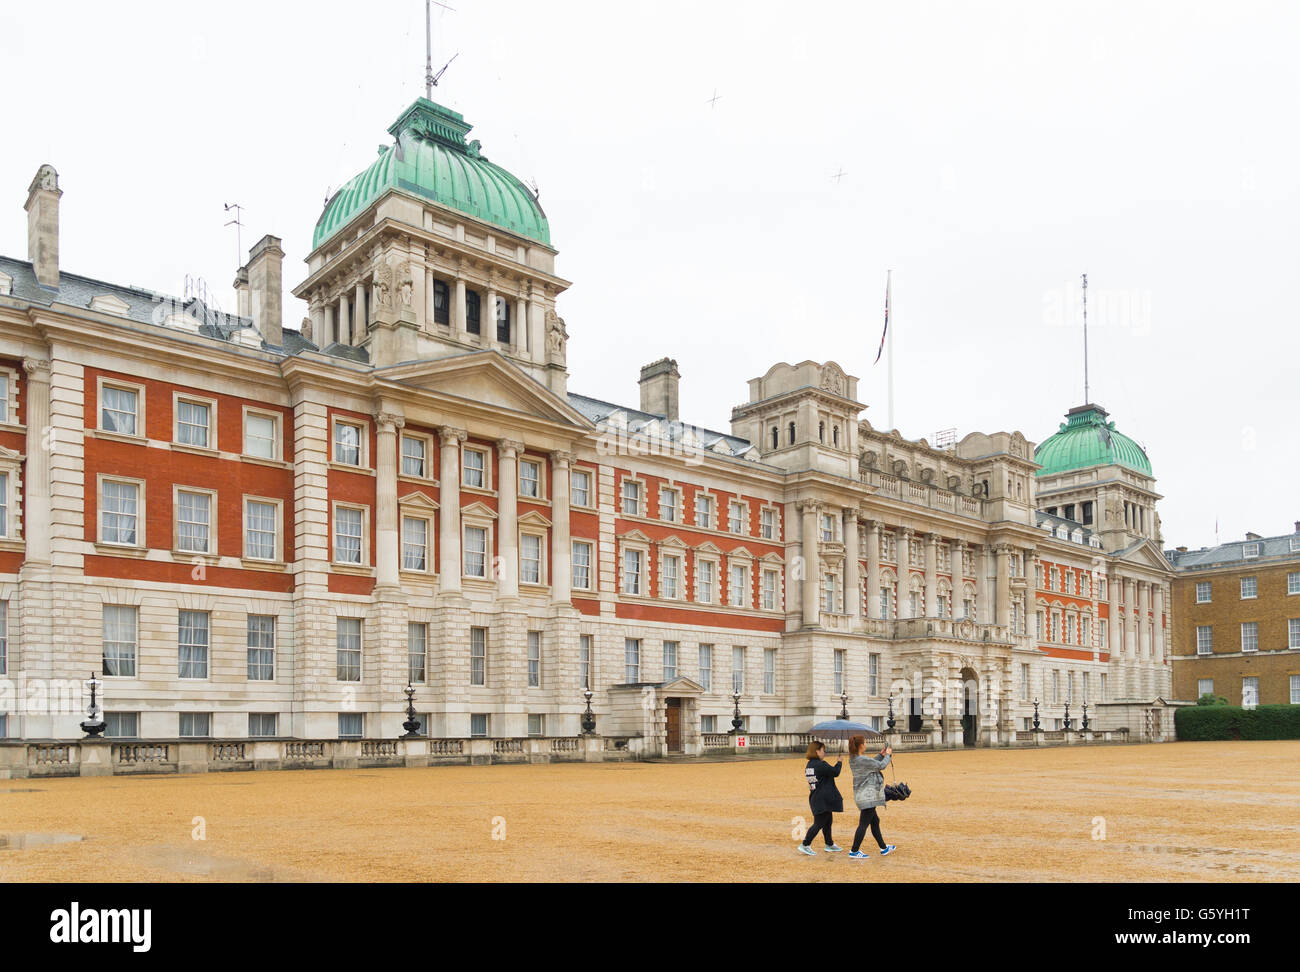 Londres, Inglaterra - 21 de octubre de 2015: Dos turistas desconocidos delante del palacio Whitehall. El Palacio de Whitehall (o Palac Foto de stock